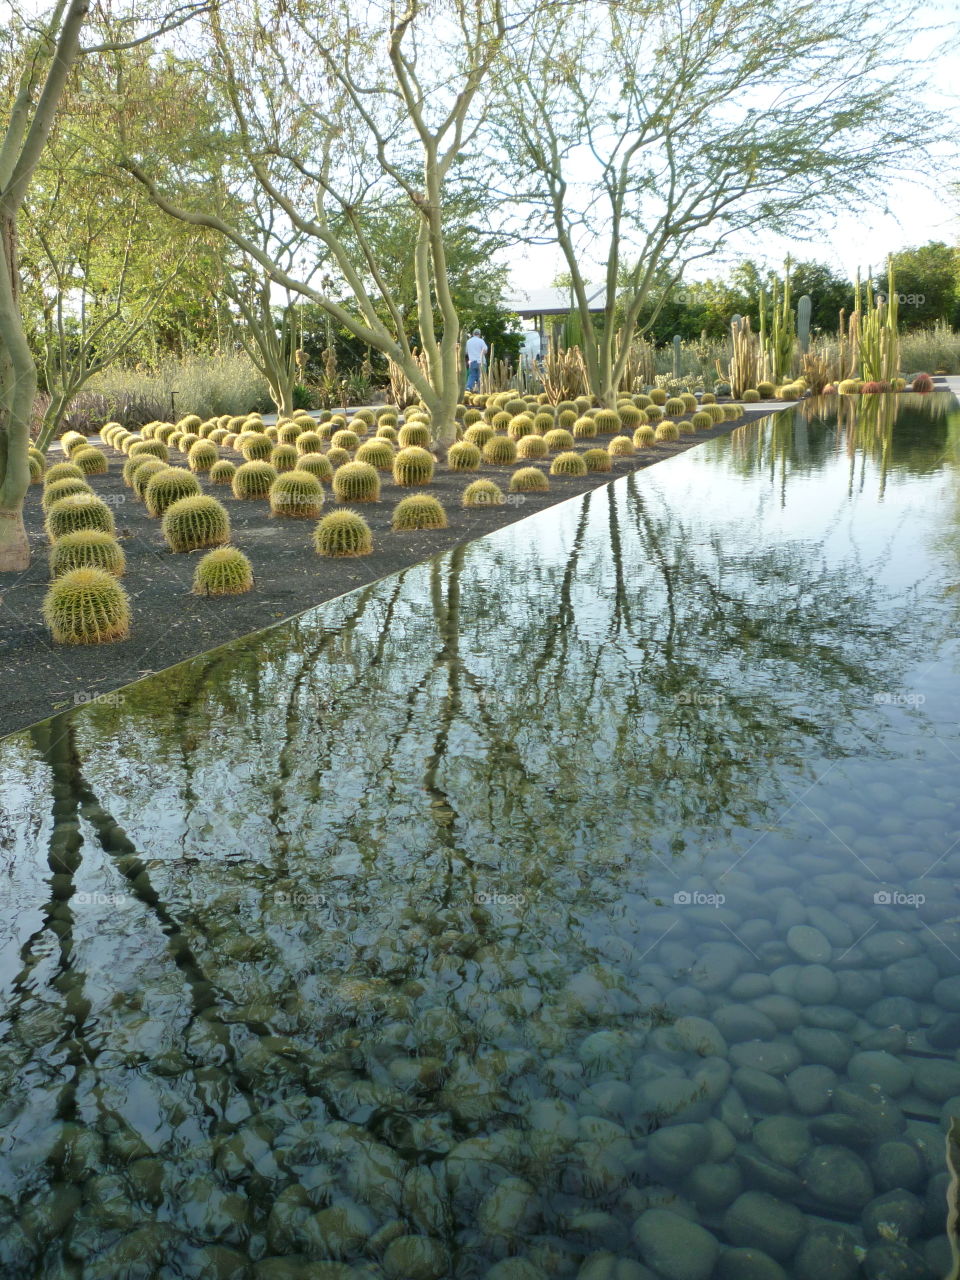 View of cactus plants